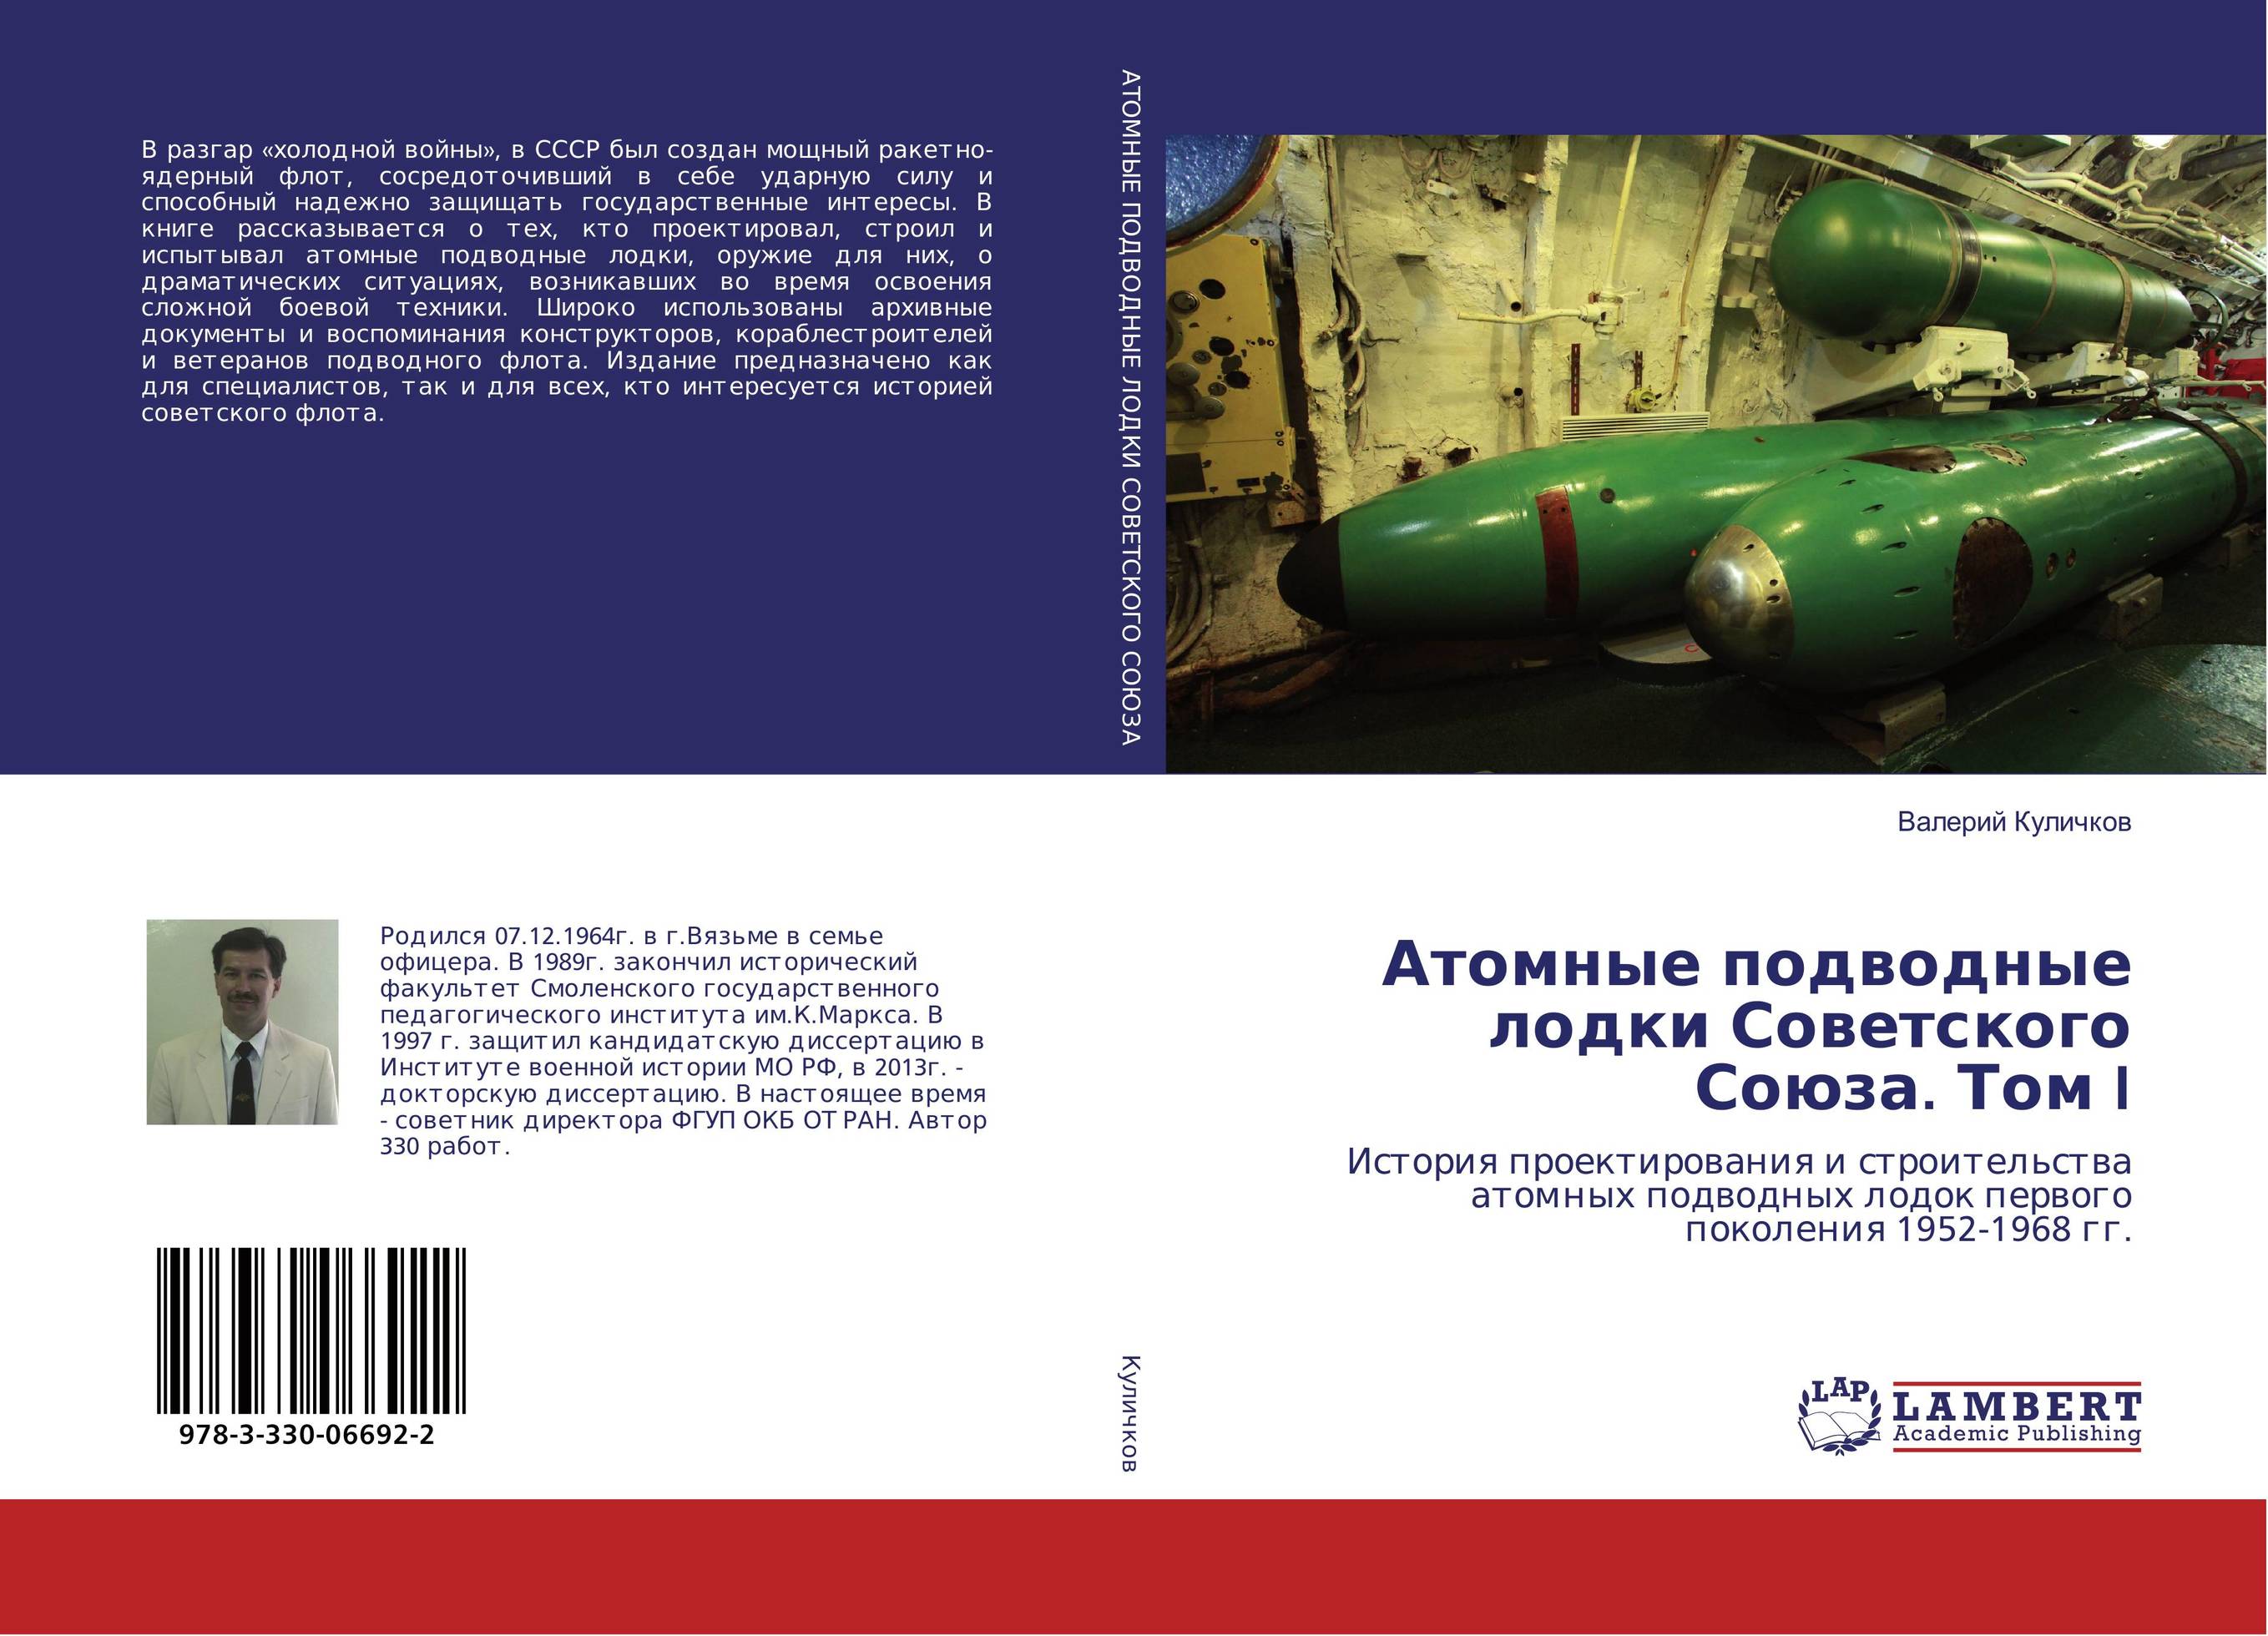 
        Атомные подводные лодки Советского Союза. Том I. История проектирования и строительства атомных подводных лодок первого поколения 1952-1968 гг..
      